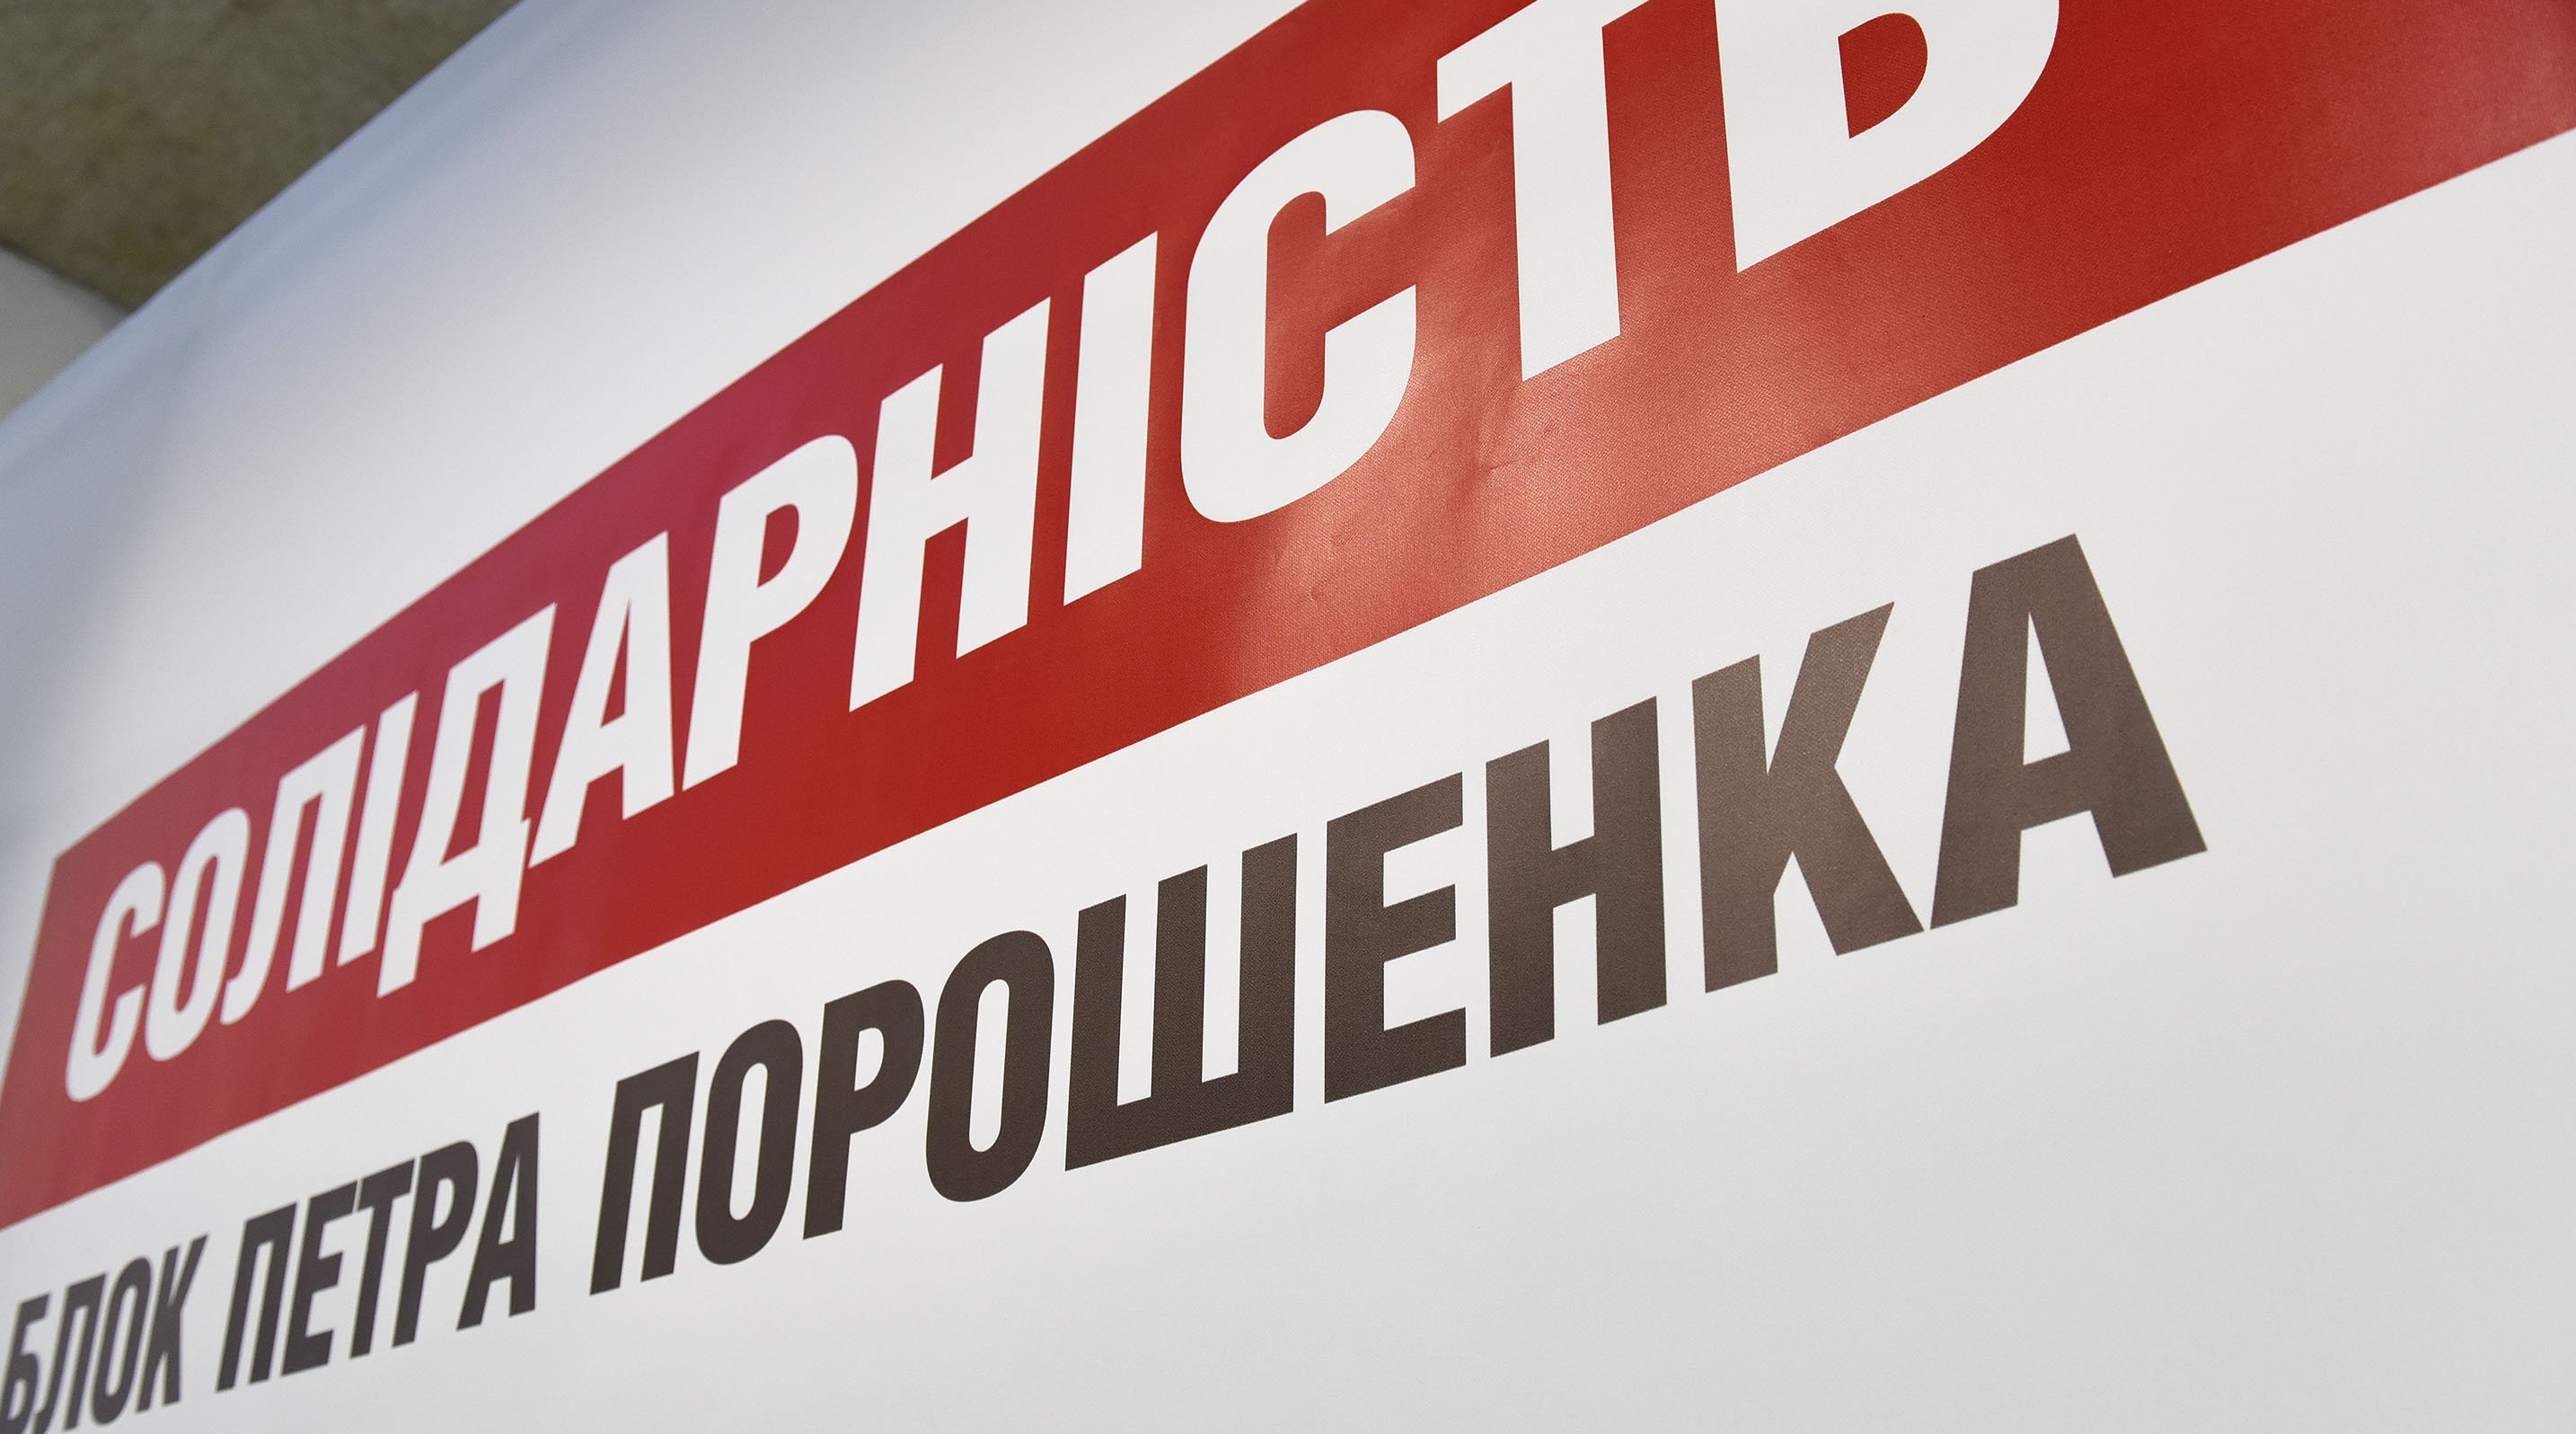 В штабе Порошенко в Сумах задерживали двух агитаторов – СМИ